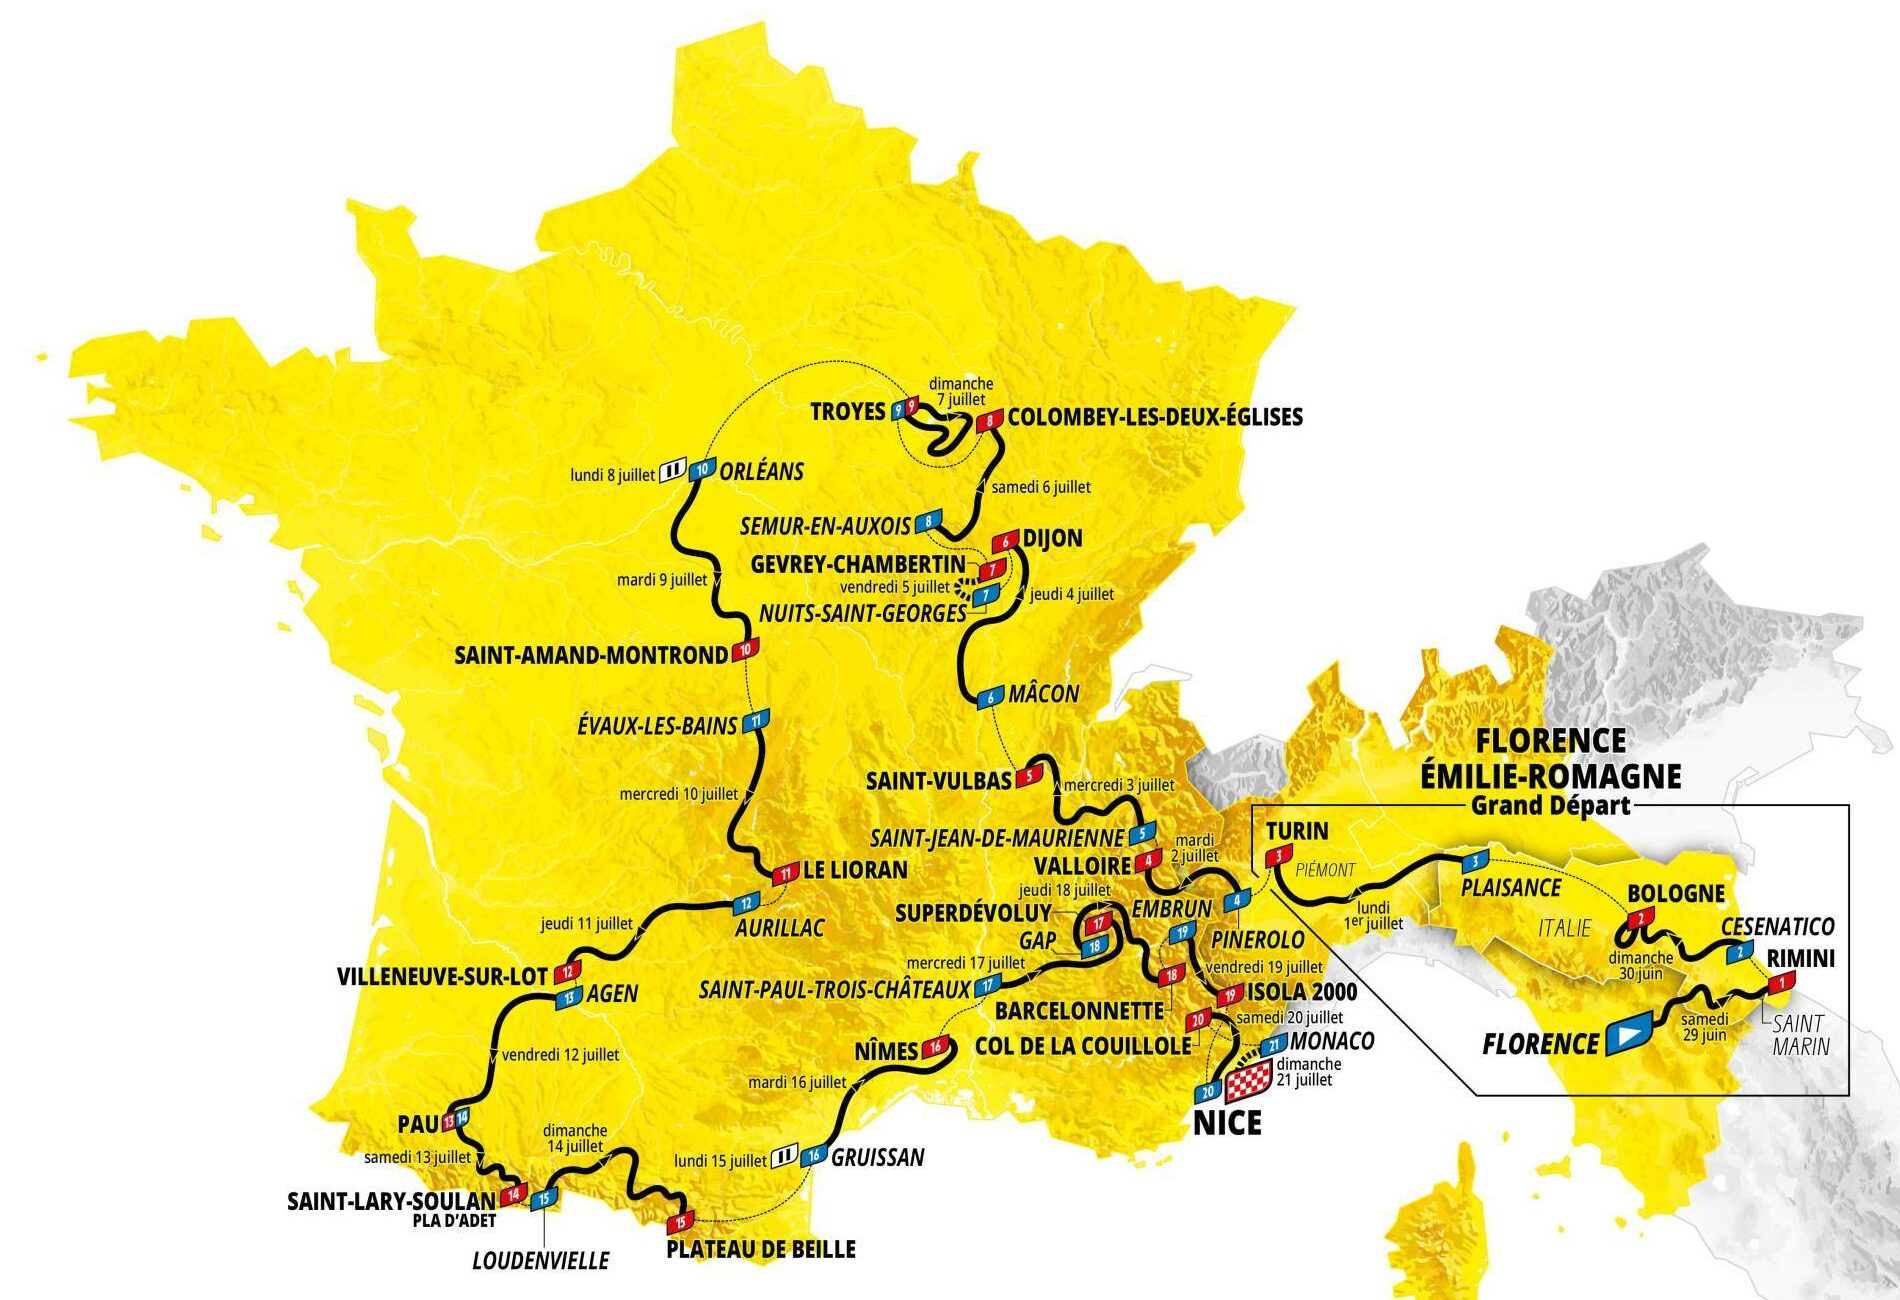 Tour de France 2024 Route